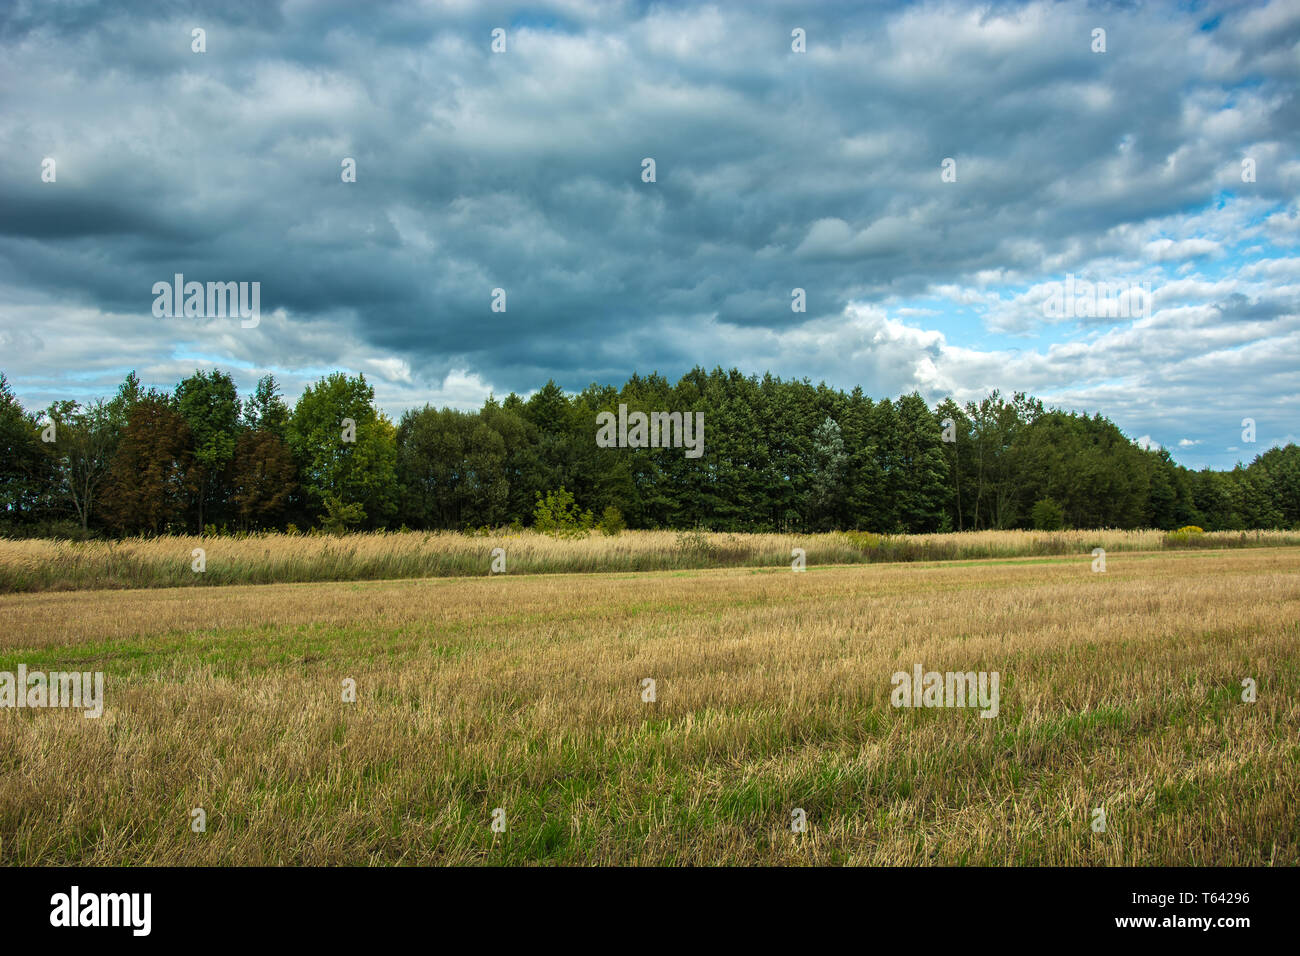 Stoppel im Feld, Wald und dunkle Regenwolken - Ländliche Ansicht Stockfoto